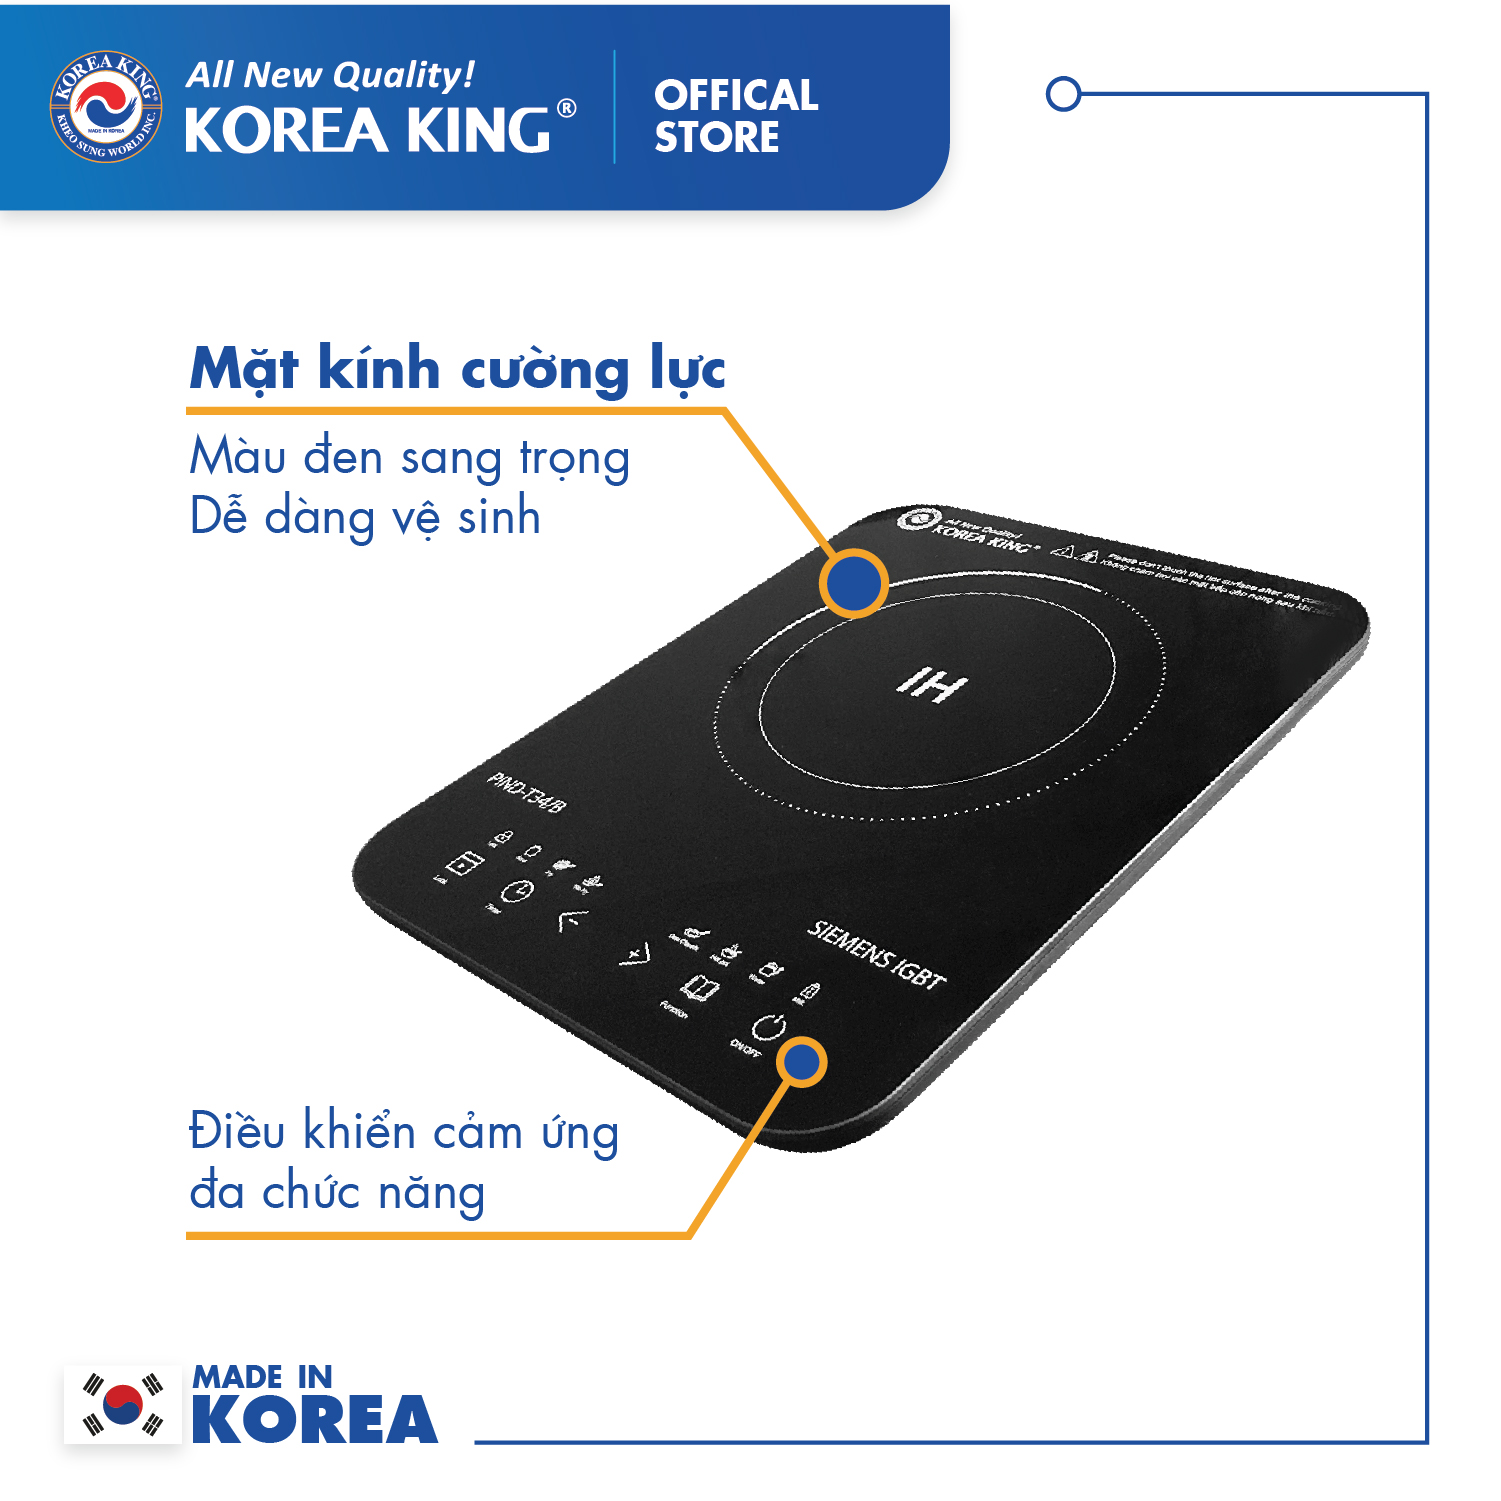 Bếp điện từ Korea King PIND-T34B (bếp đơn, mặt kính cường lực, công suất 1800W ) - Hàng chính hãng